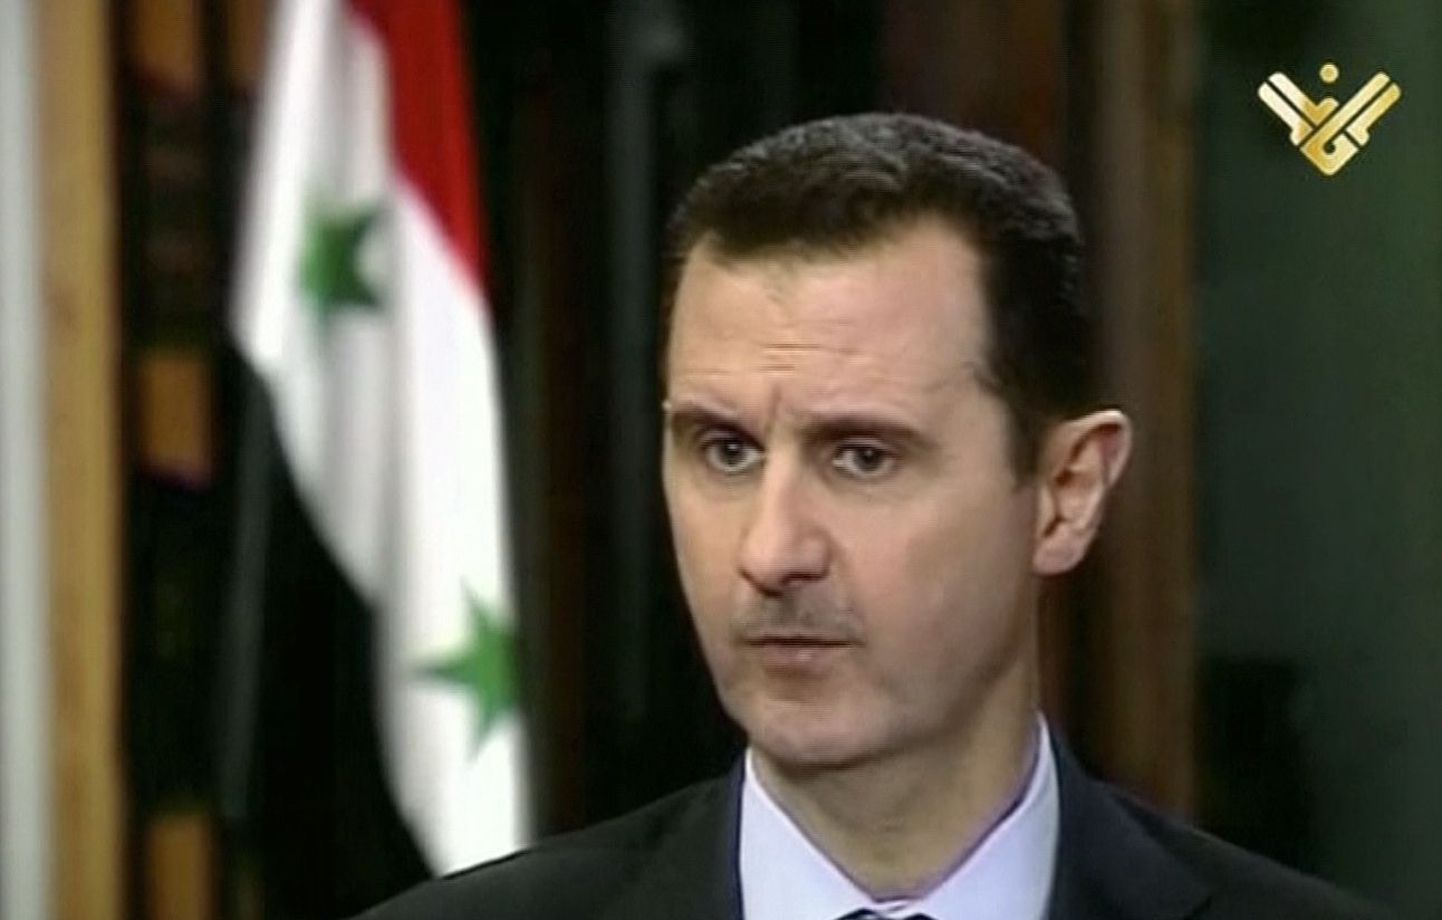 Süüria president Bashar Assad.